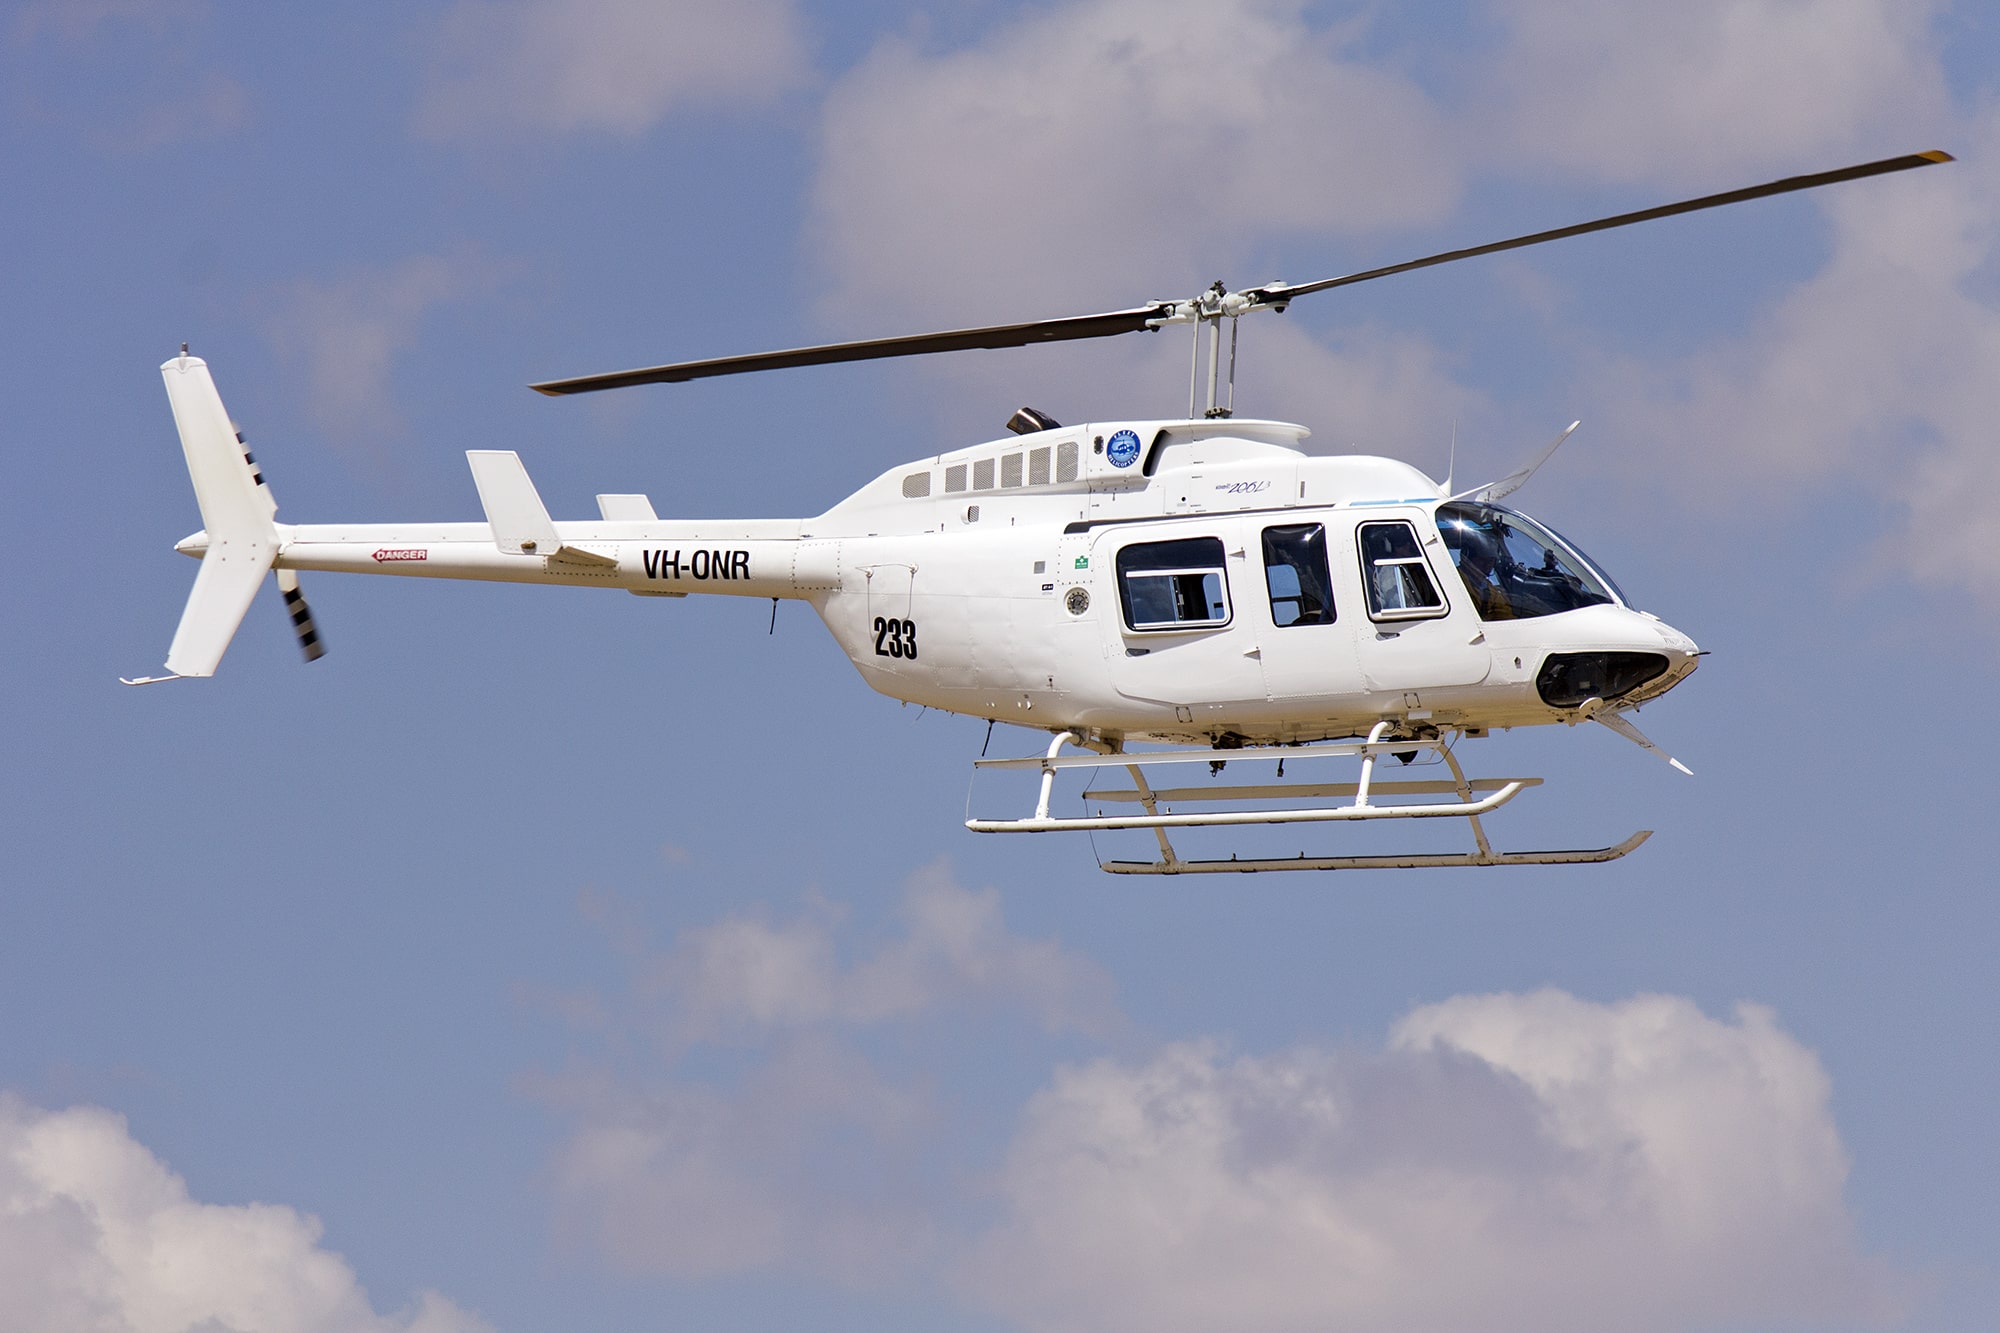 Le Bell 206 pour l'expédition de colis